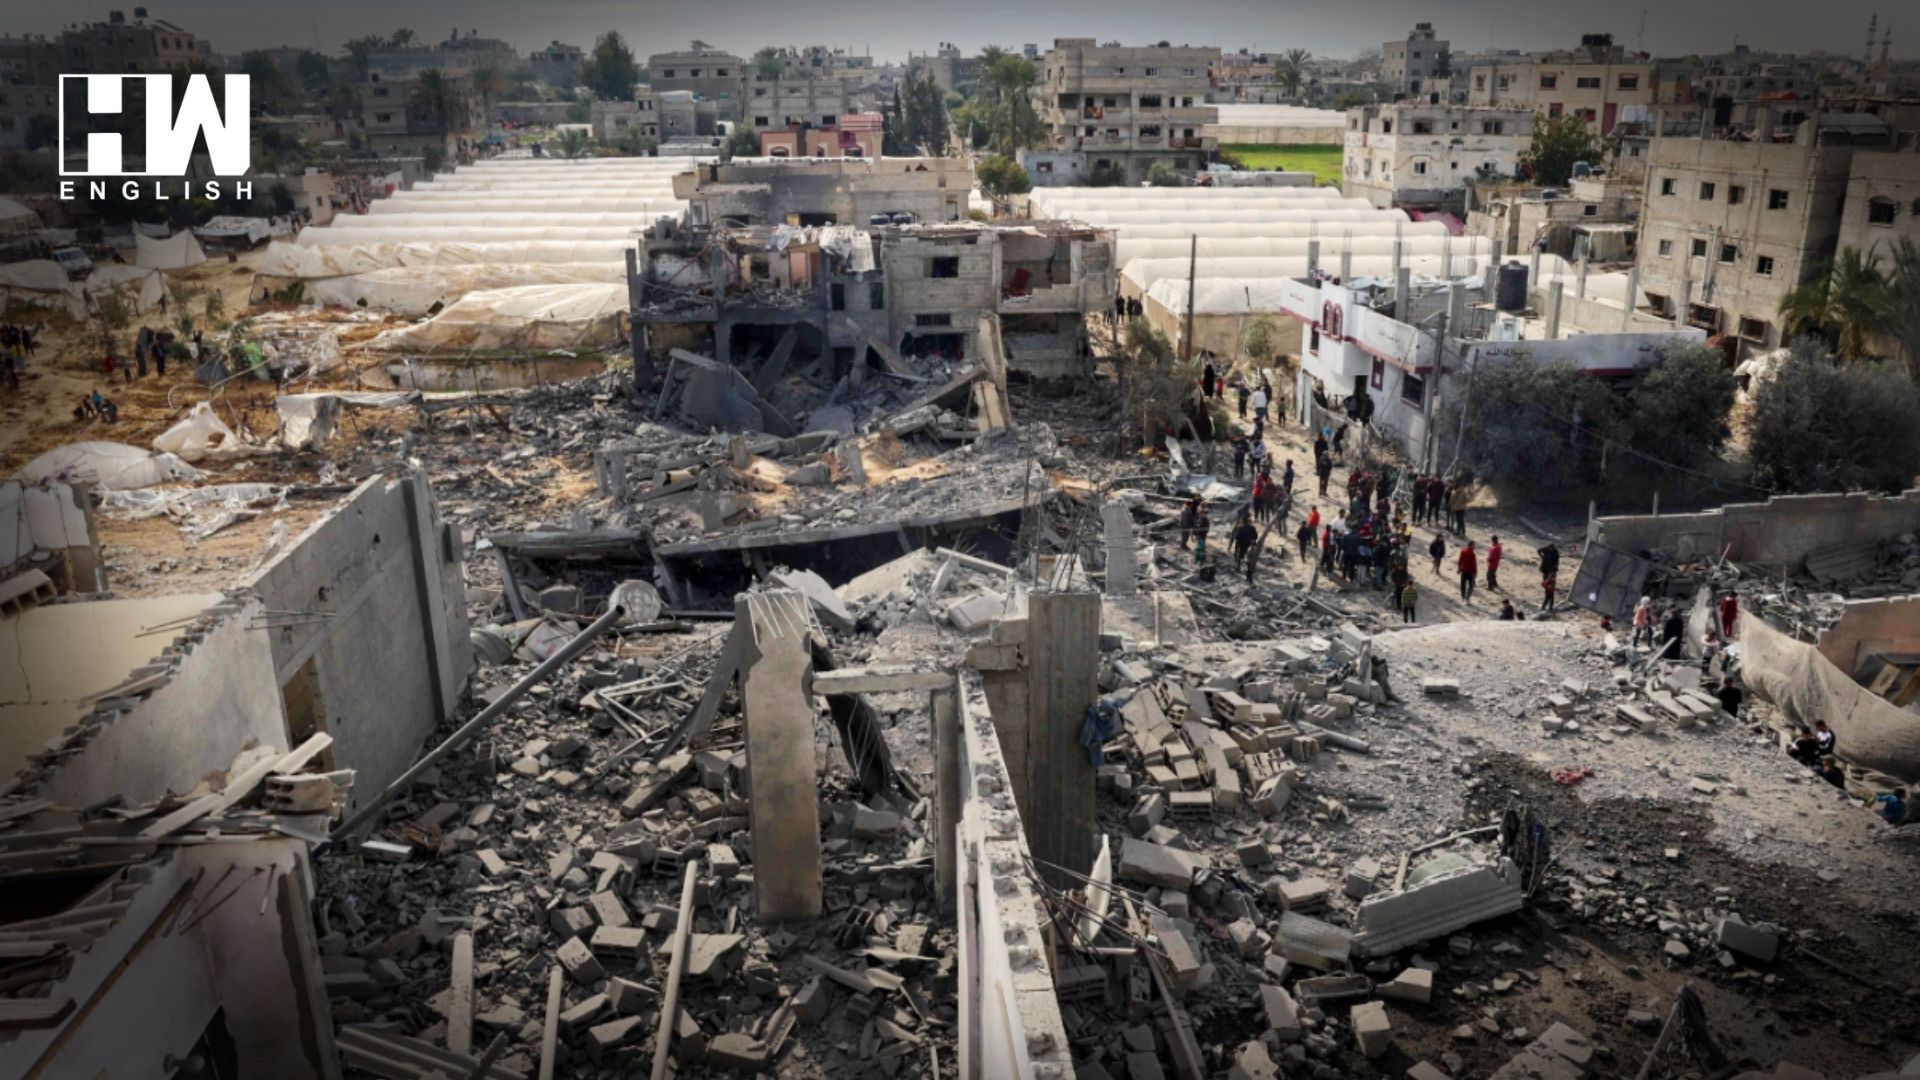 France Evacuates 42 People From Gaza – HW News English